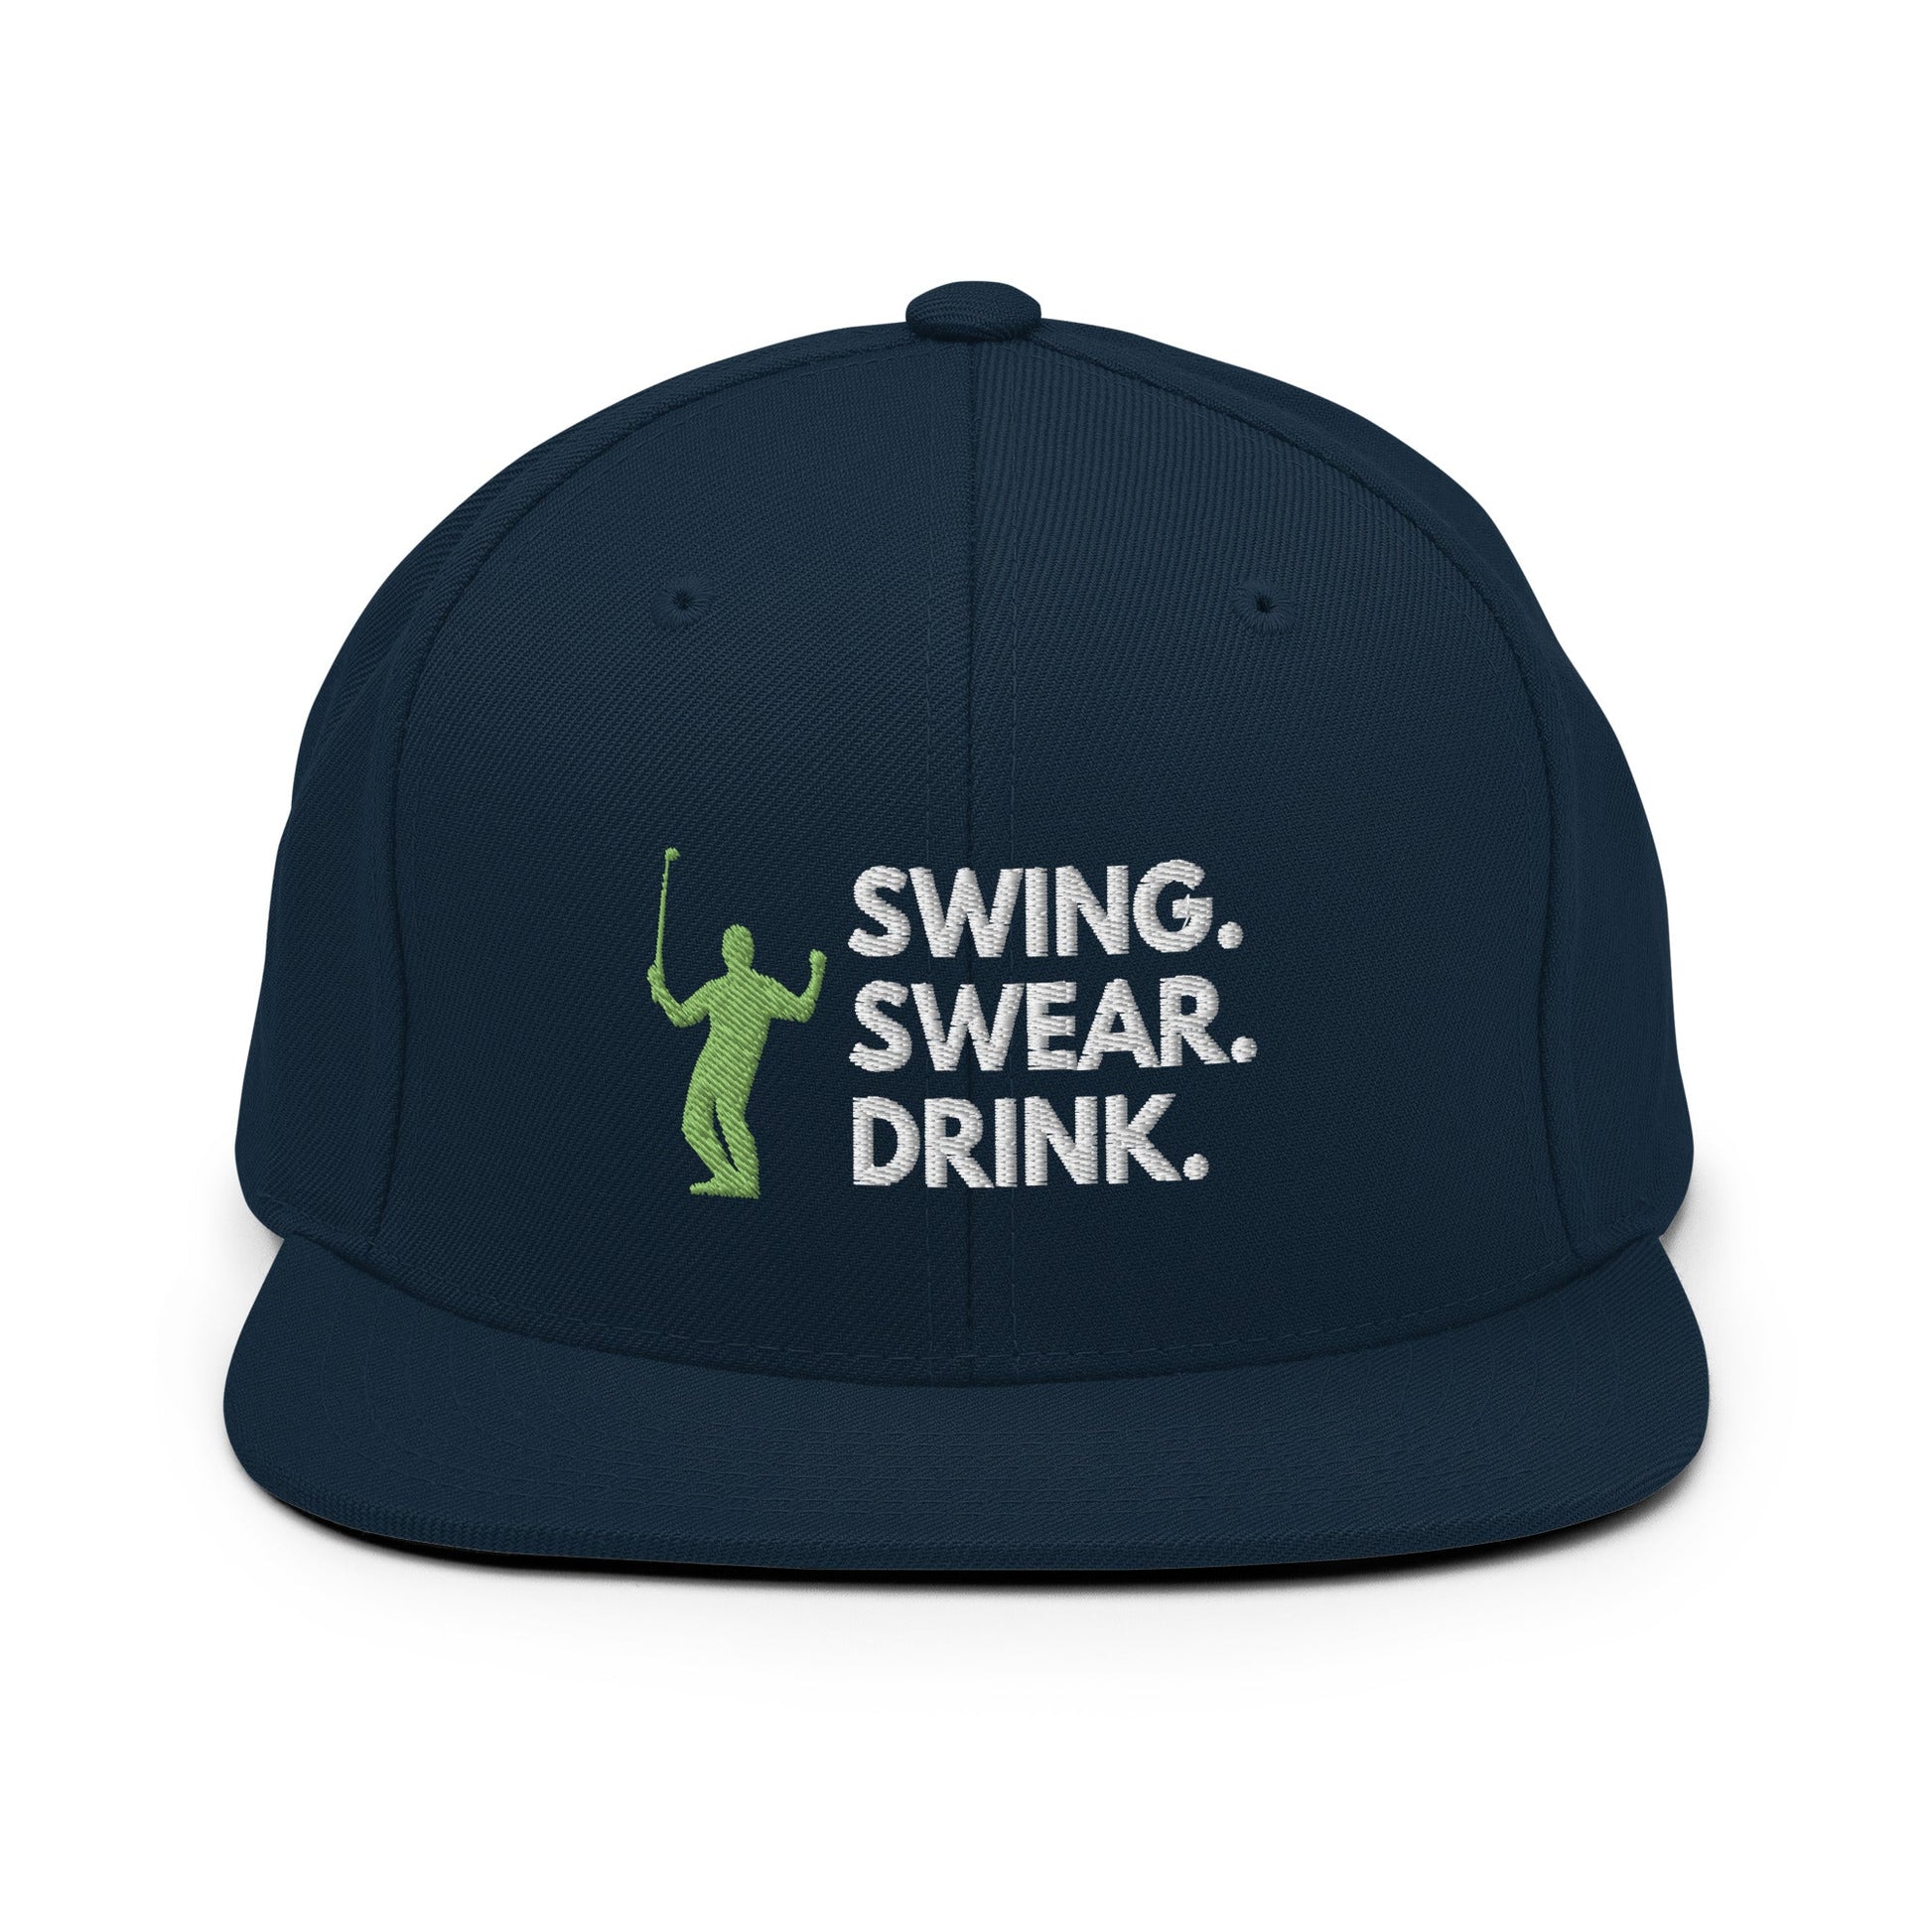 Funny Golfer Gifts  Snapback Hat Dark Navy Swing. Swear. Drink Snapback Hat